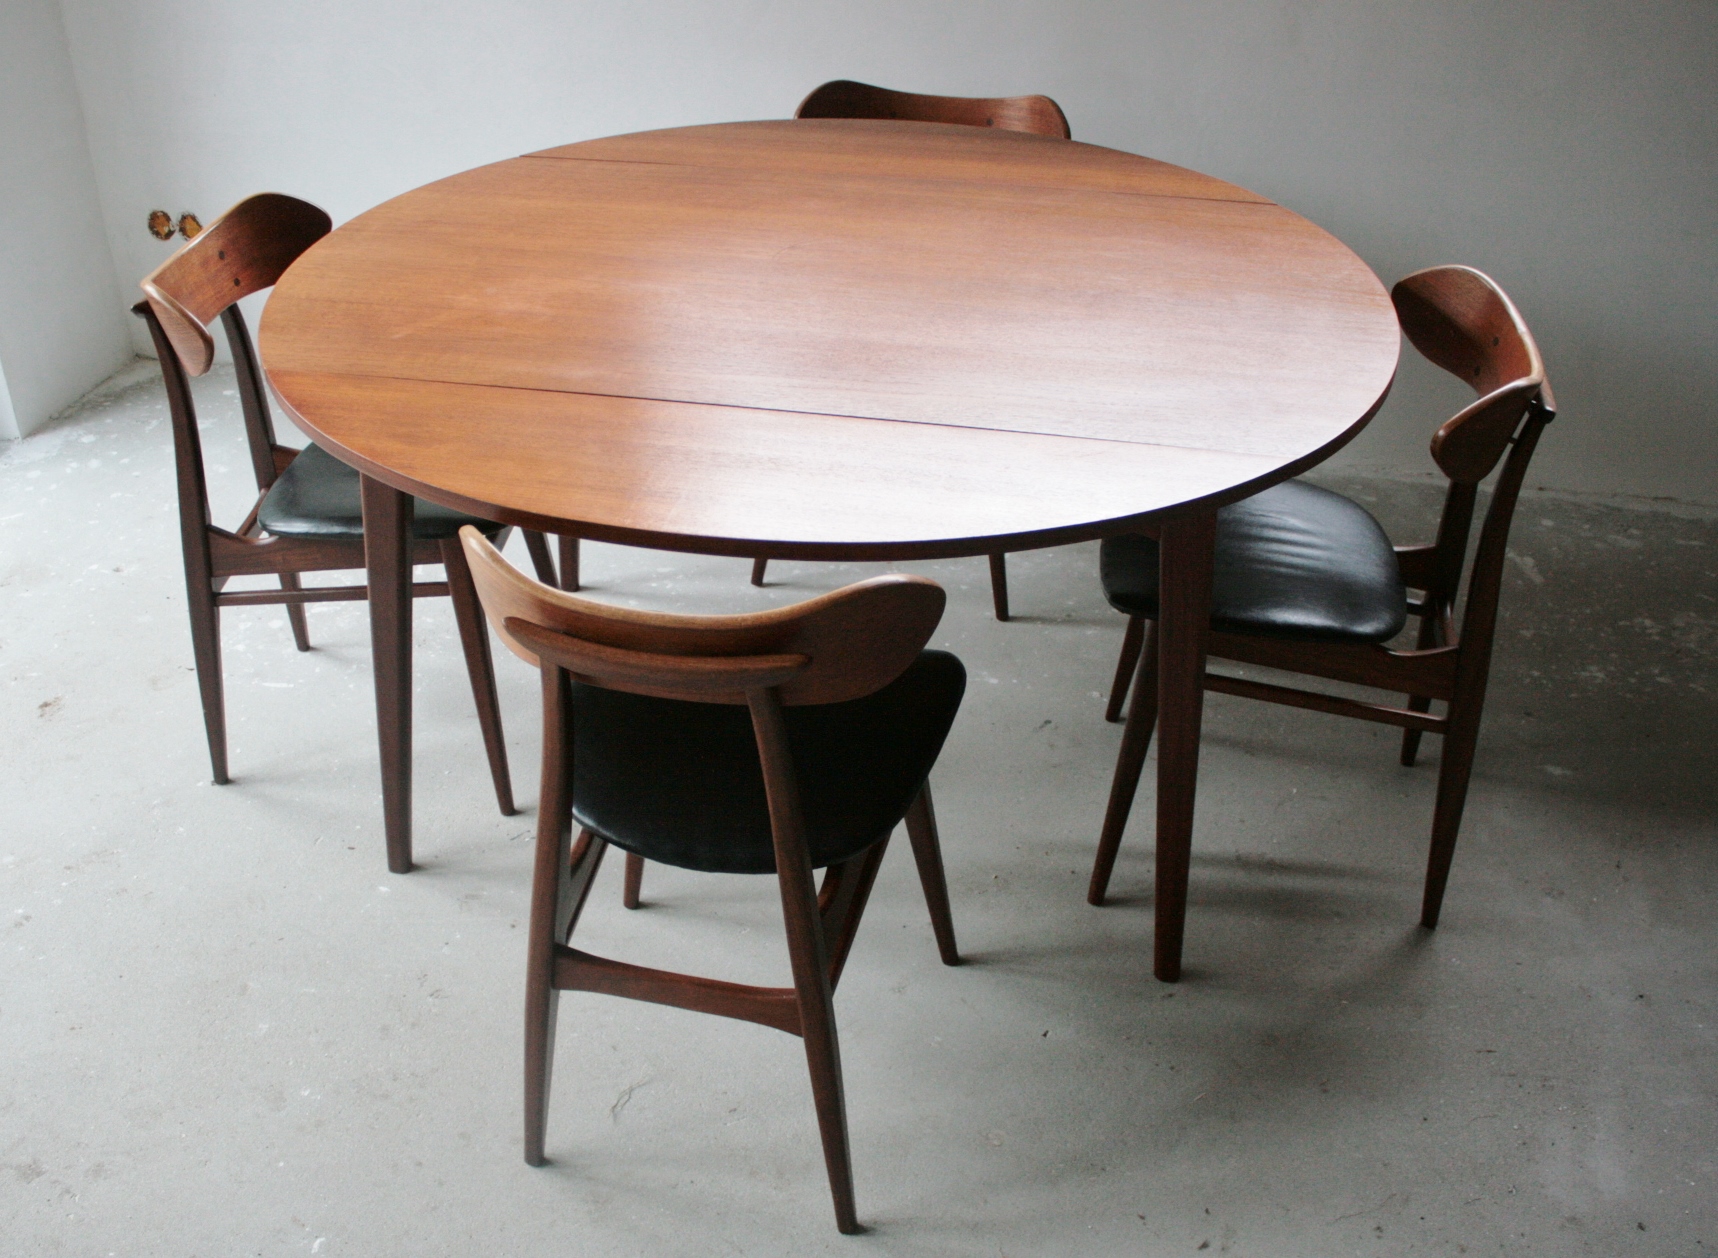 Verkocht Louis van Teeffelen ronde tafel met 4 stoelen, mid century: Verkocht : Curiosa de Vlinder, webshop in curiosa, brocante, emaille, Keukengerei, vintage en antiek, vrijdags is onze winkel geopend, koffie